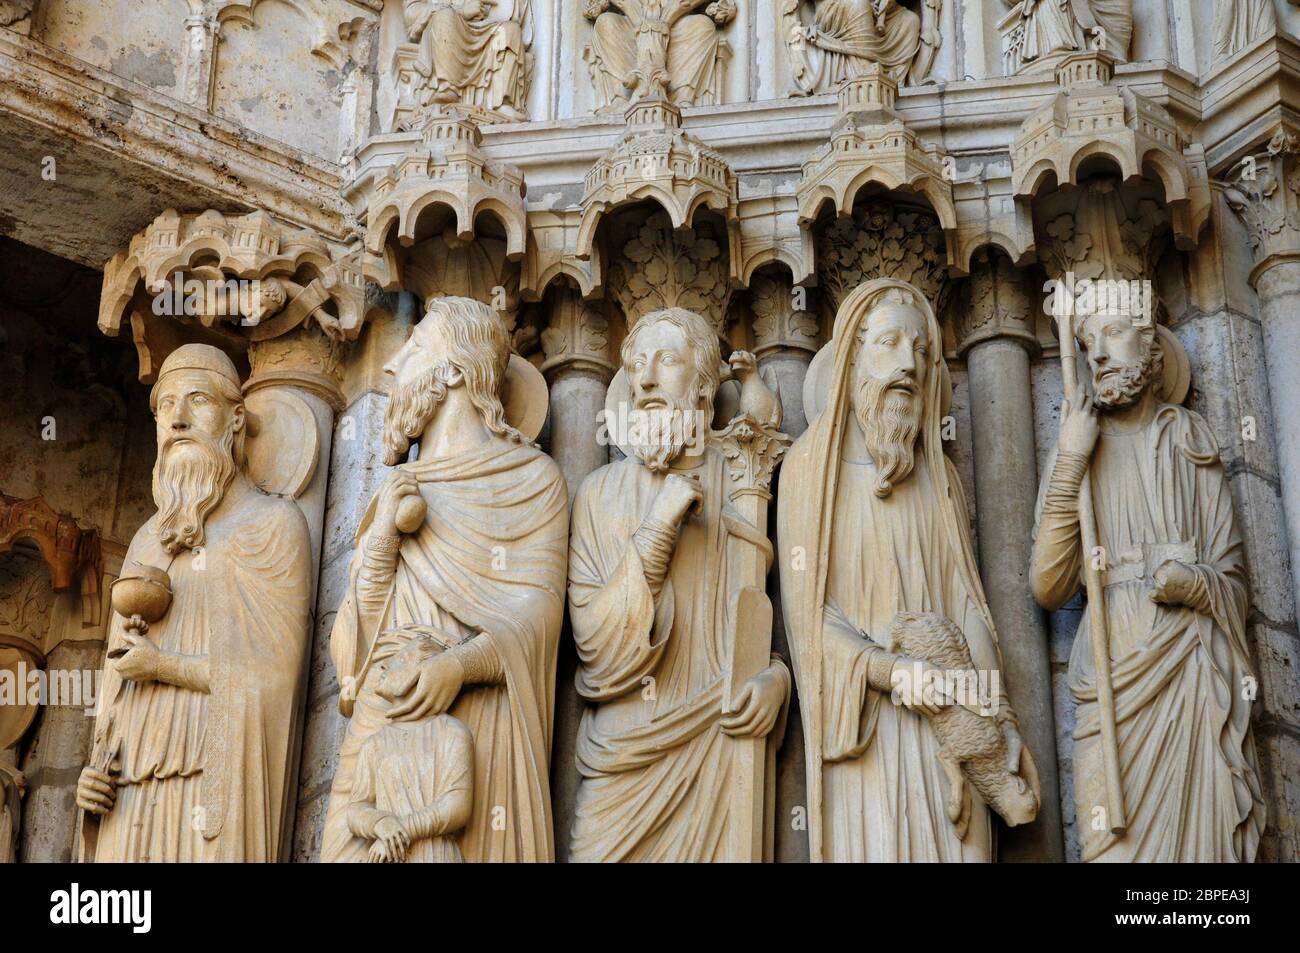 France, cathédrale de Chartres, des statues sur le porche Banque D'Images